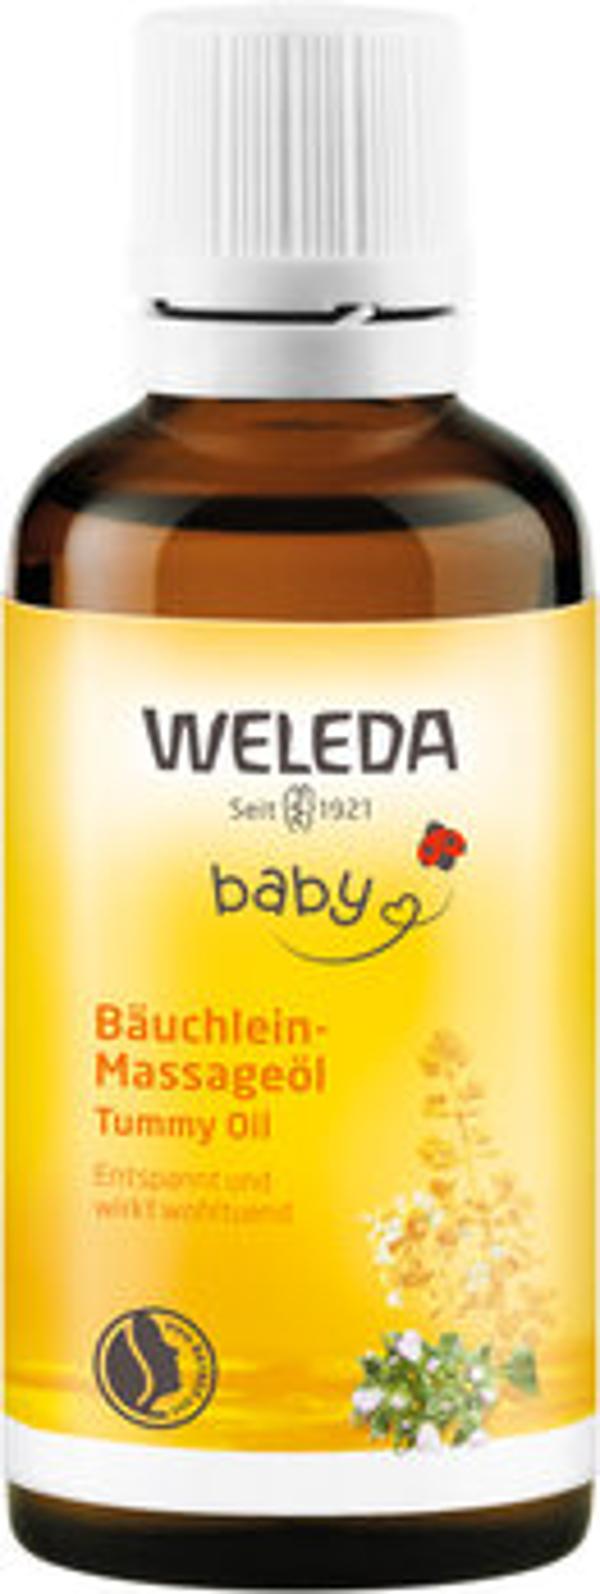 Produktfoto zu Weleda Baby Bäuchlein Massageöl 50ml